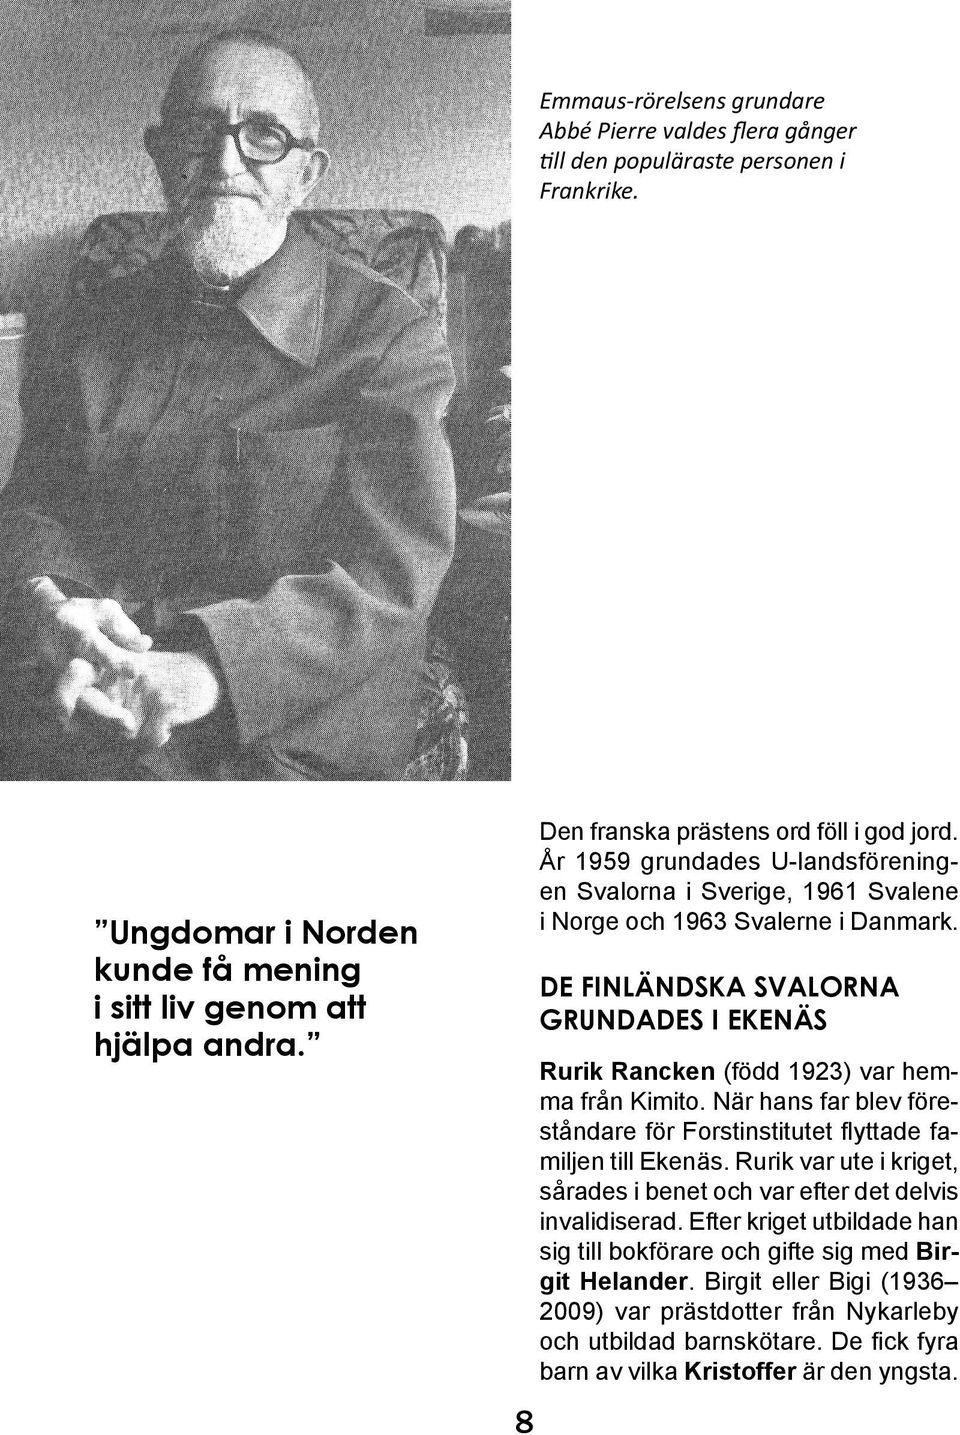 DE FINLÄNDSKA SVALORNA GRUNDADES I EKENÄS Rurik Rancken (född 1923) var hemma från Kimito. När hans far blev föreståndare för Forstinstitutet flyttade familjen till Ekenäs.